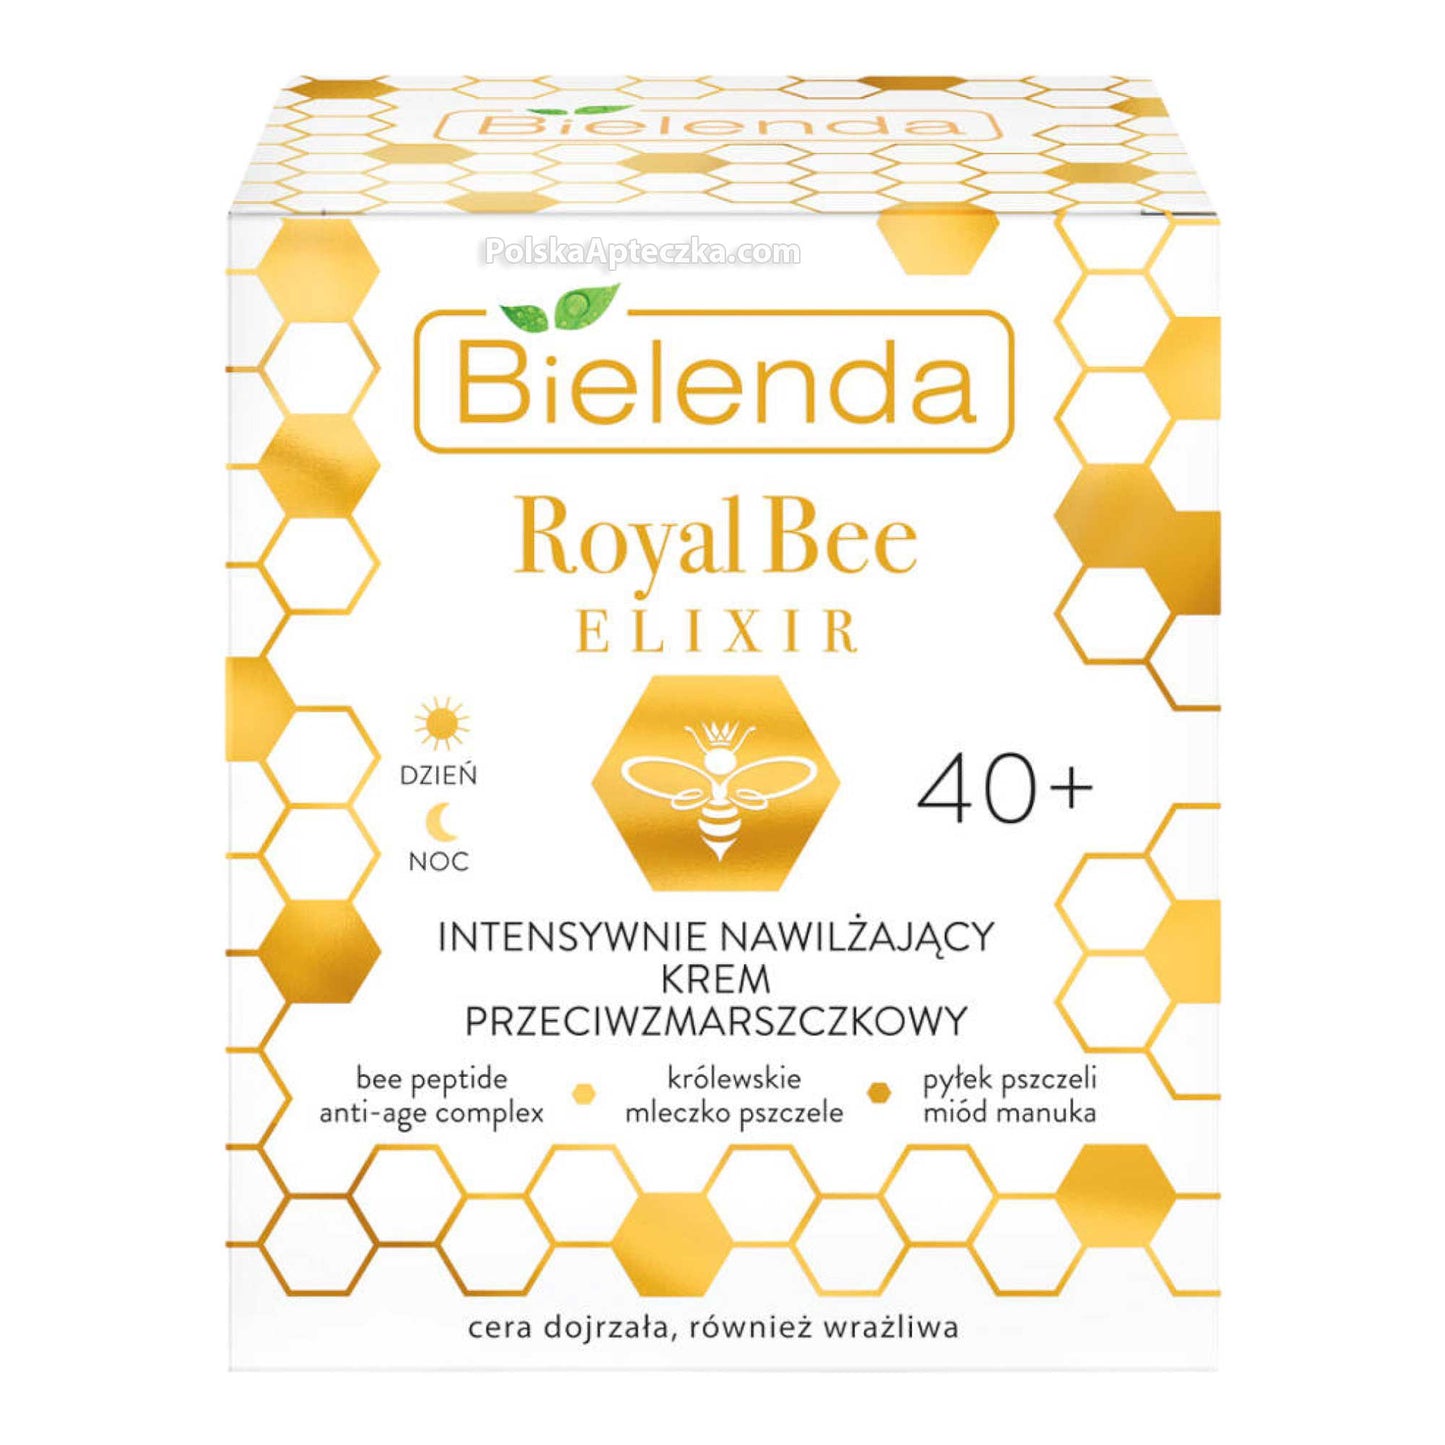 Bielenda, Royal Bee Elixir, 40+ Intensywnie nawilzajacy krem przeciwzmarszczkowy na dzien i noc 50 g